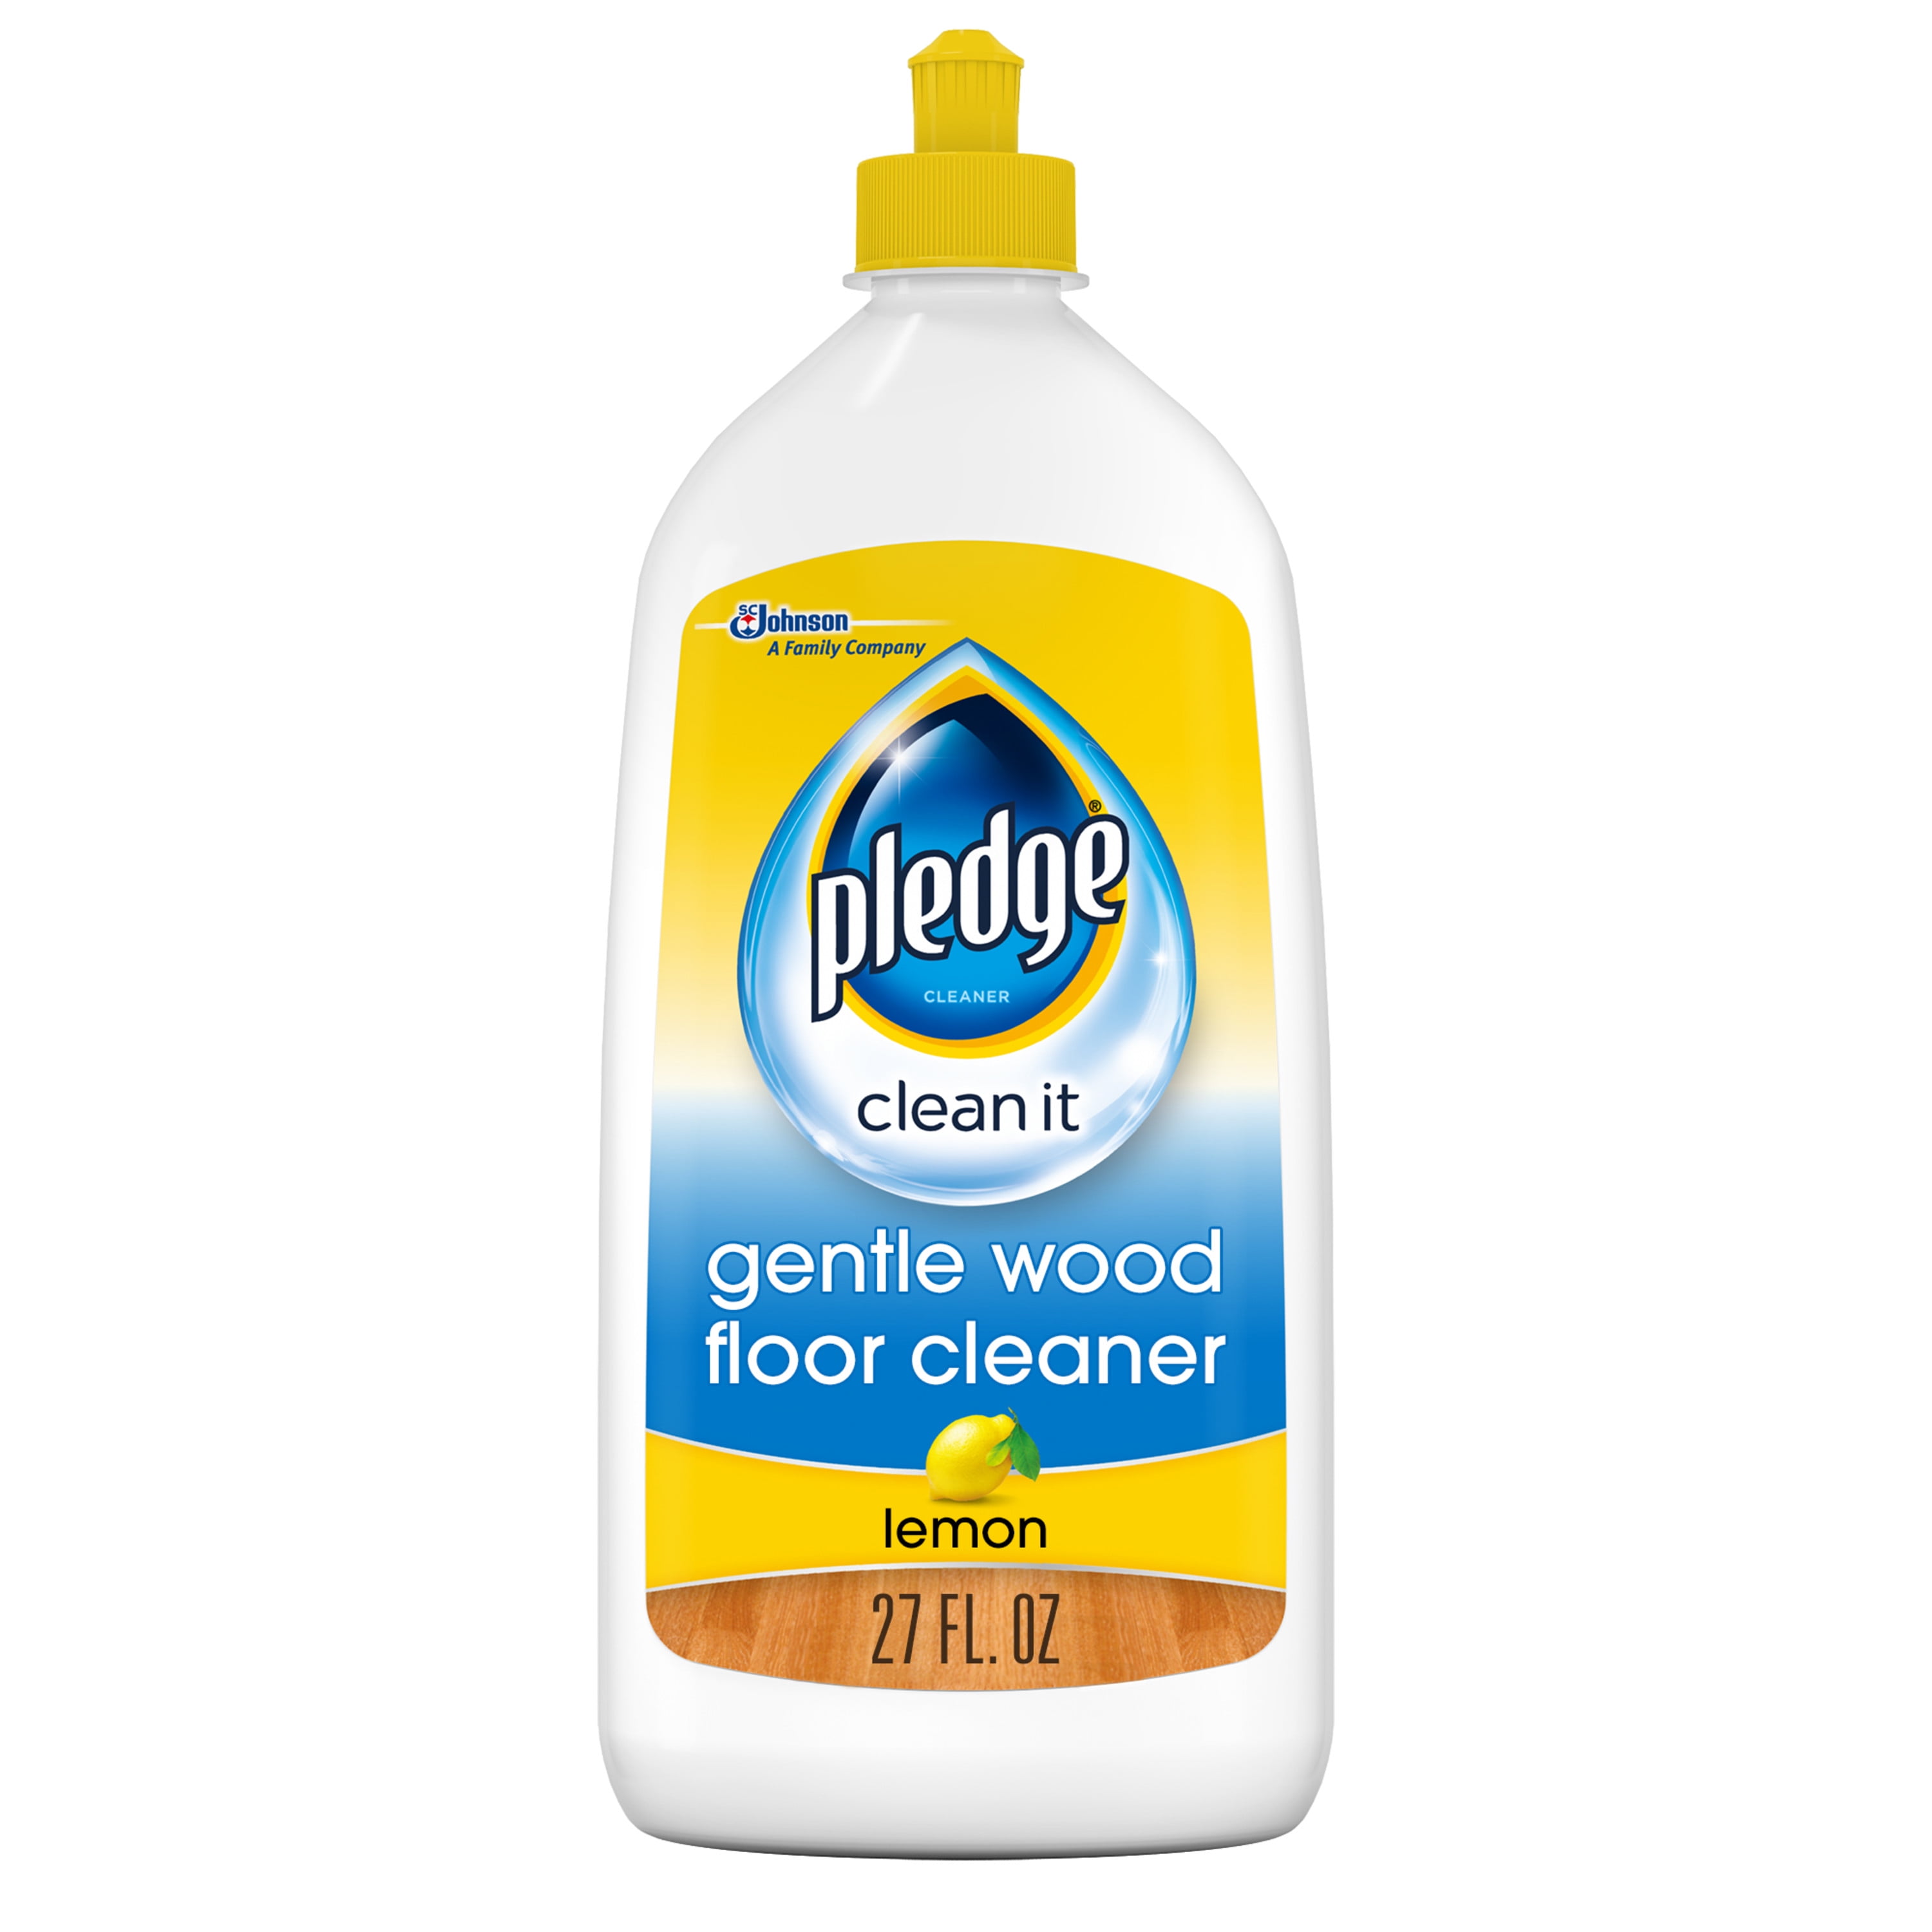 Pledge Gentle Wood Floor Cleaner Lemon, Best Soap For Hardwood Floors